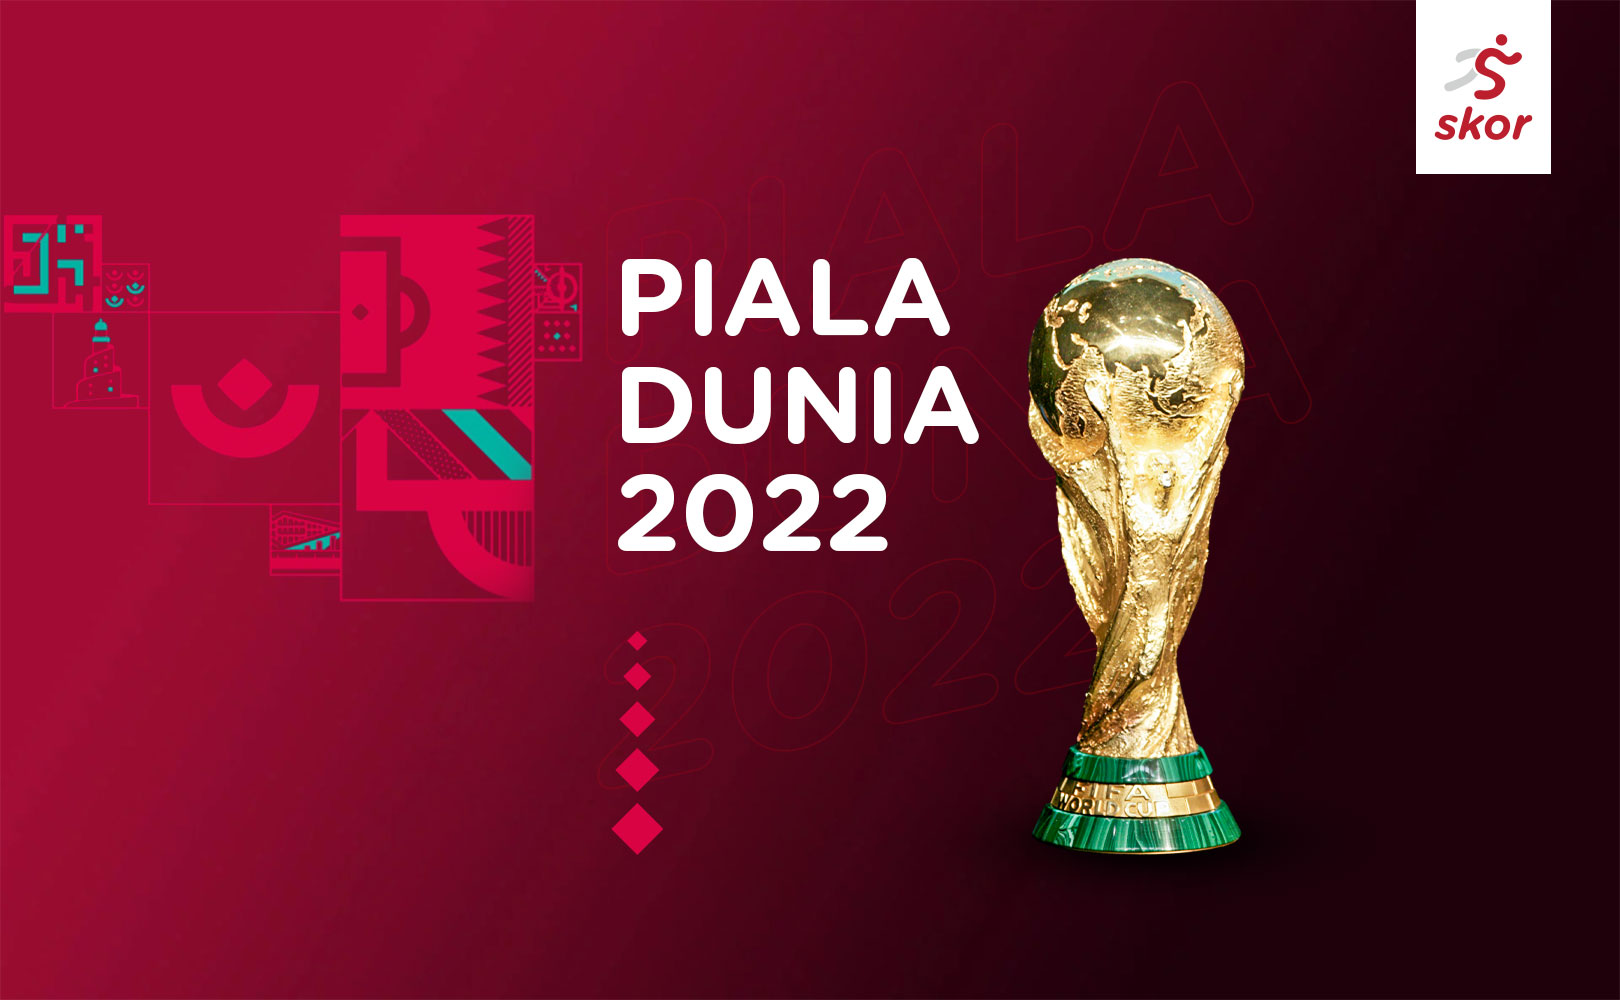 Piala Dunia 2022: Korea Selatan Umumkan Skuad, Son Heung-min Siap Tempur